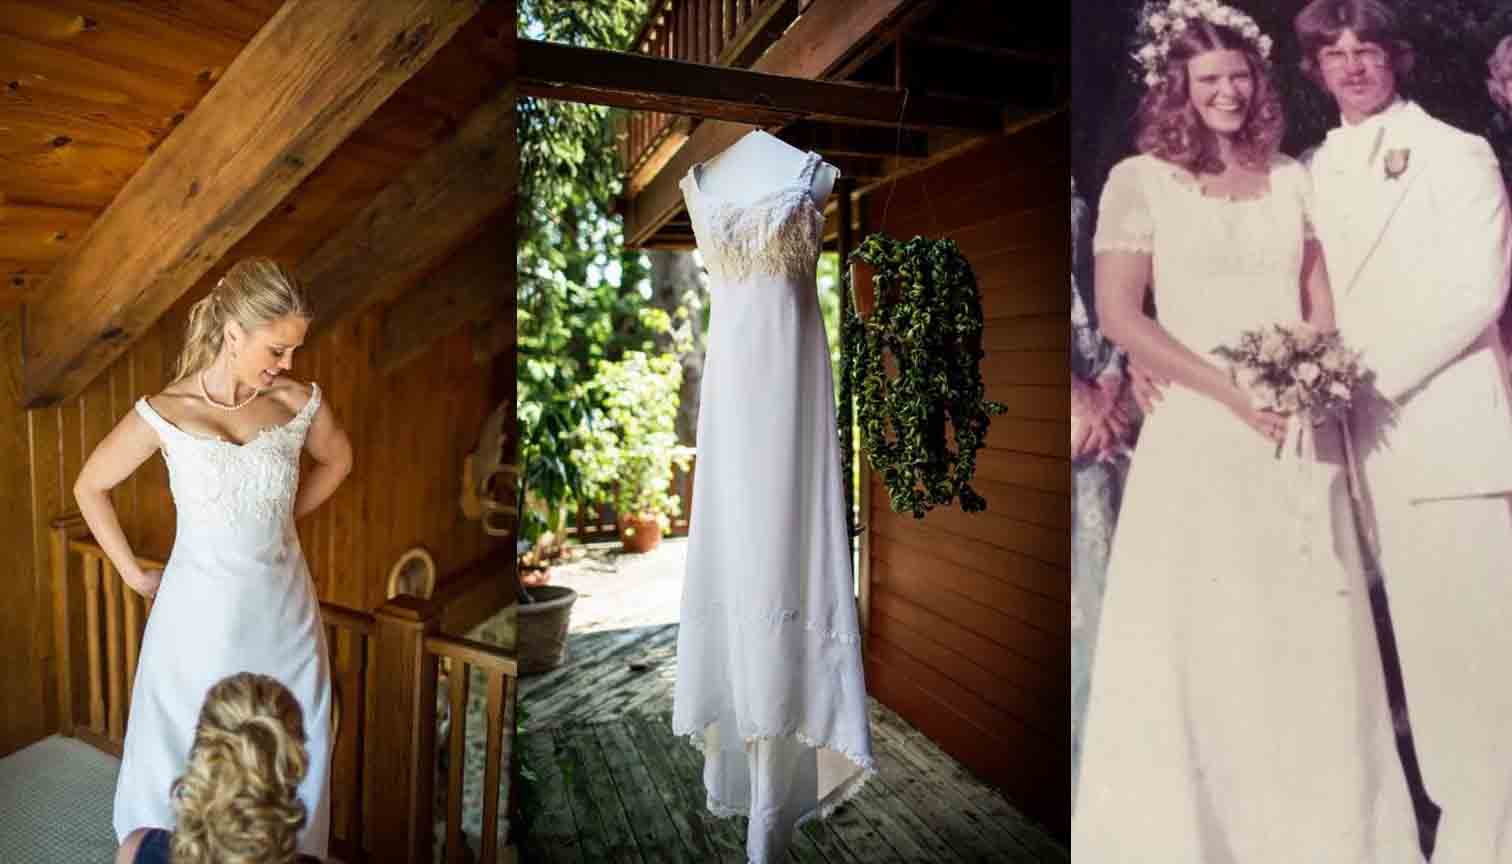 Nichole S Wedding Gown Preservation Treasured Garment Restoration